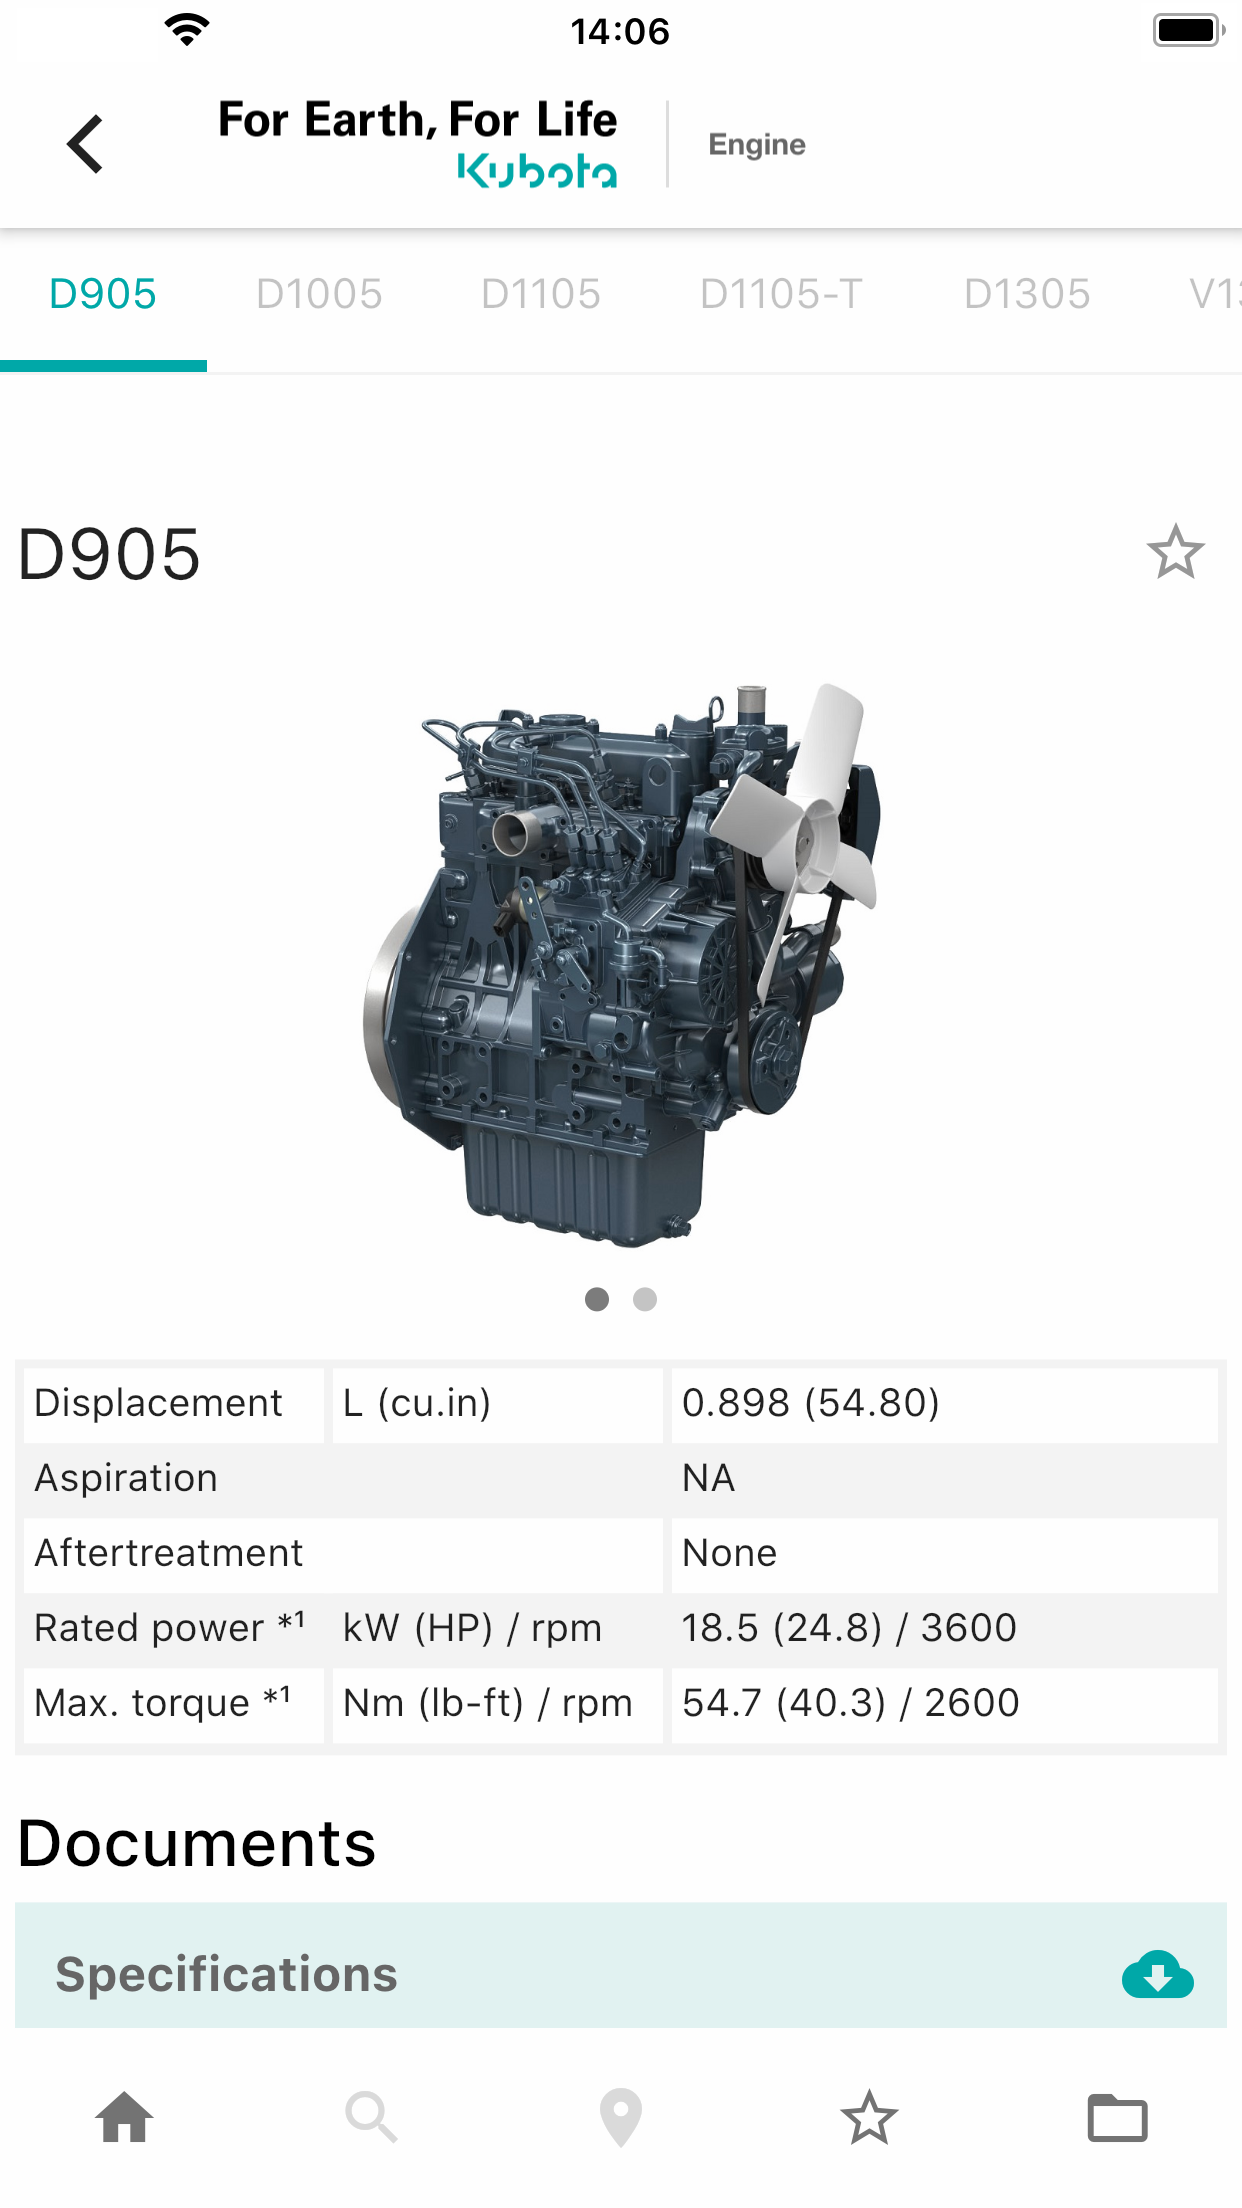 Images of Kubota Engine Catalogue App 02